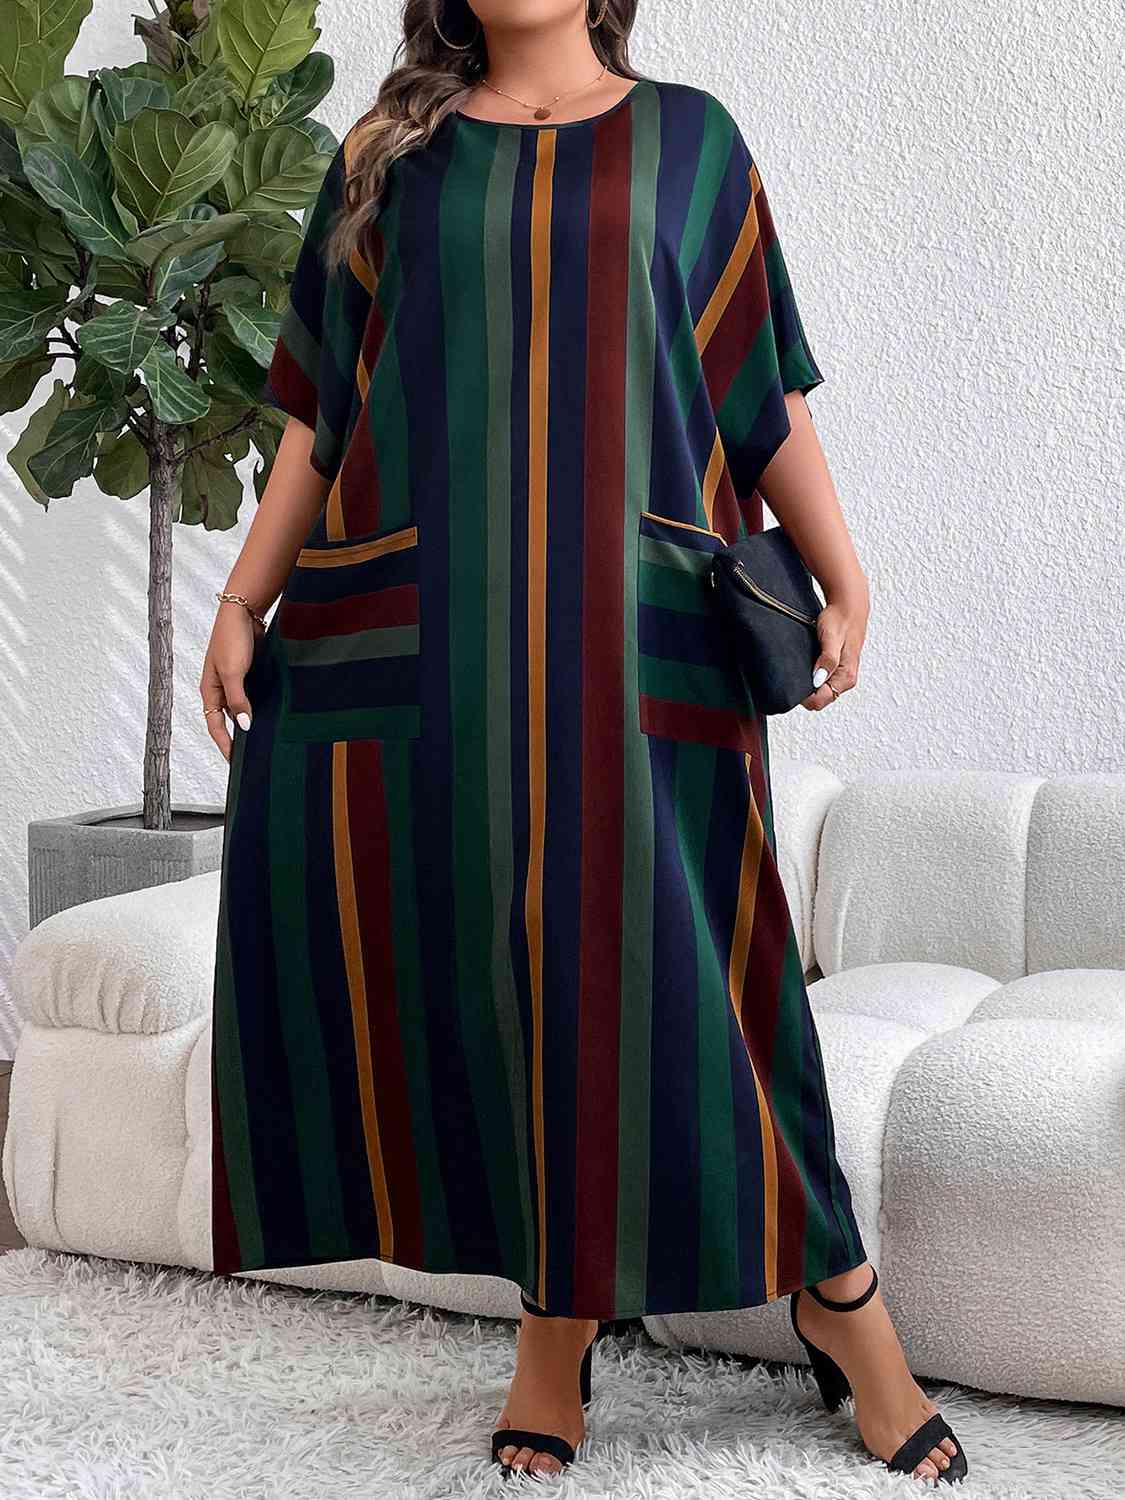 Plus Size Striped Maxi Dress with Pockets (BWMT) T - Deals DejaVu